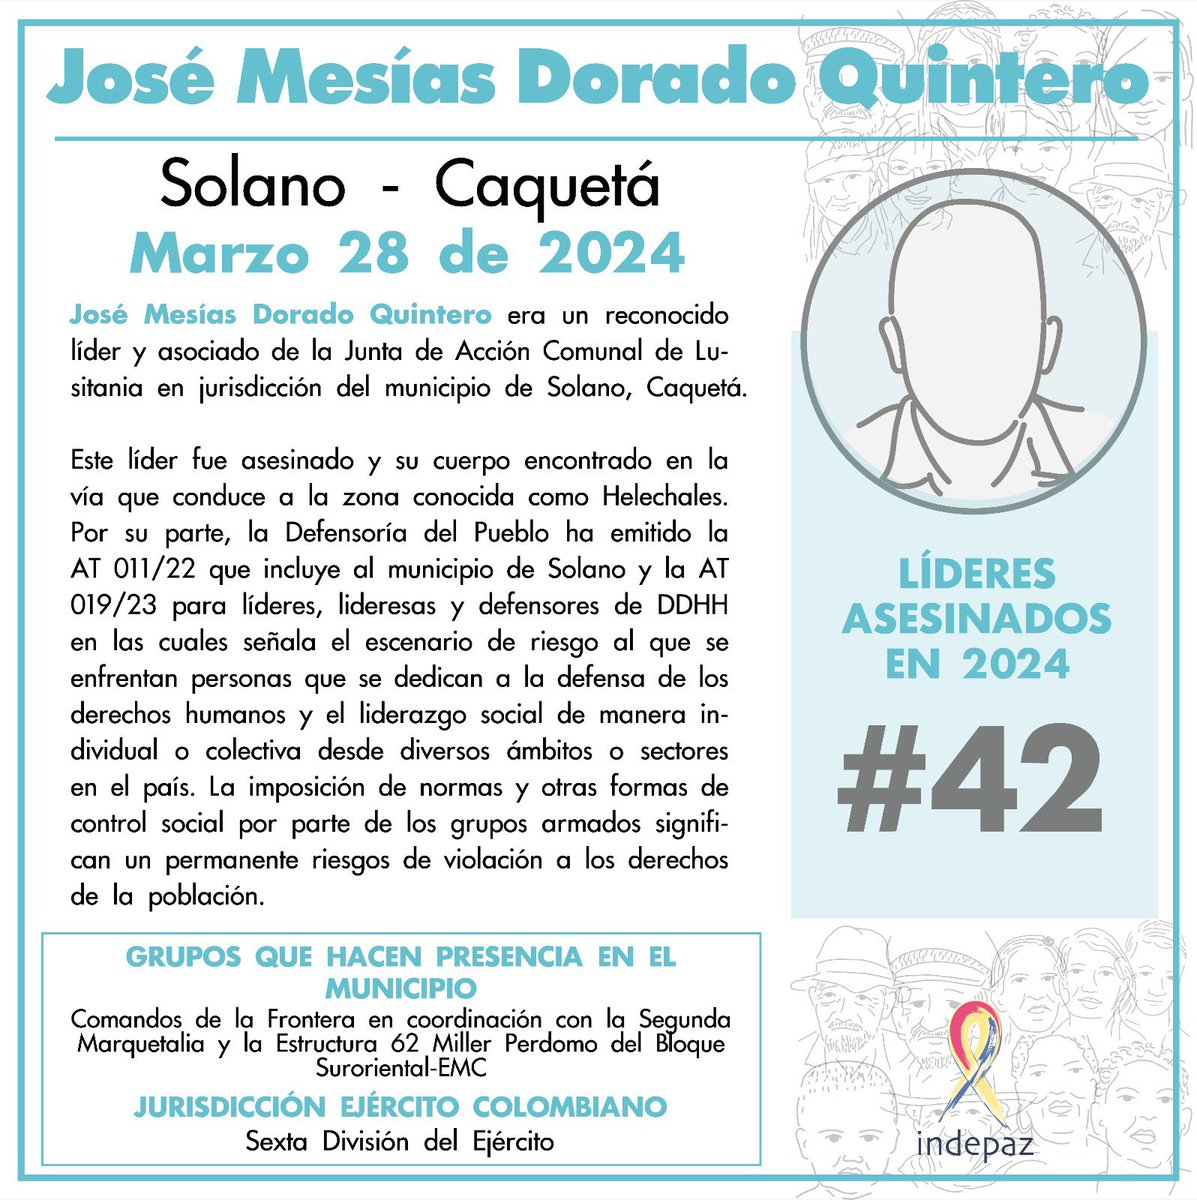 Asesinan al líder José Mesías Dorado Quintero, pertenecía a la Junta de Acción Comunal de Lusitania, jurisdicción del municipio de Solano, Caquetá. #QuePareLaMatanza